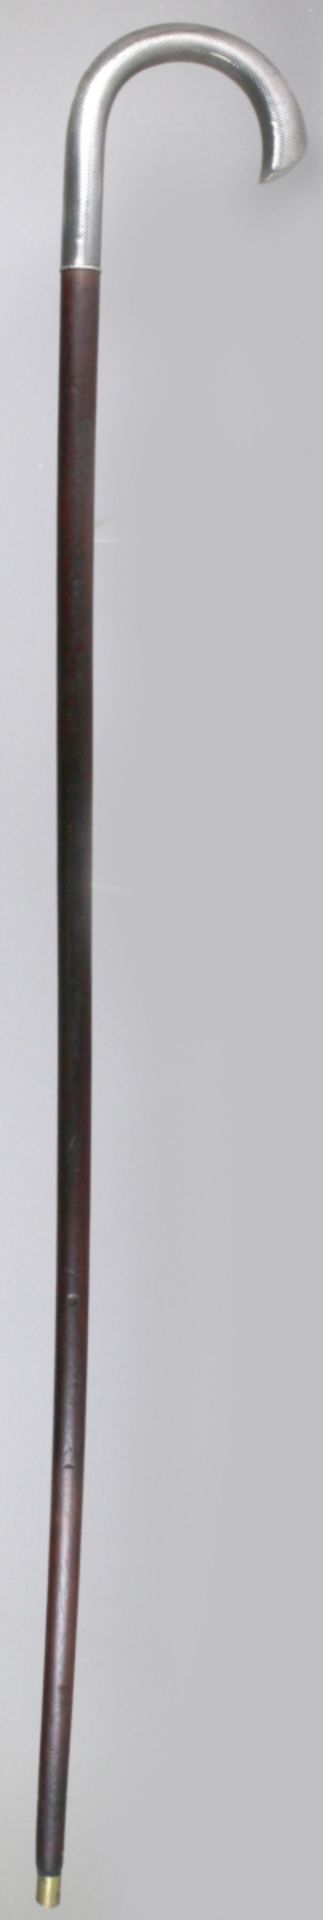 Spazierstock, dt., um 1920, brauner Holzschaft, Griff Silber 800, gearbeitet inNiello-Technik, - Bild 2 aus 4